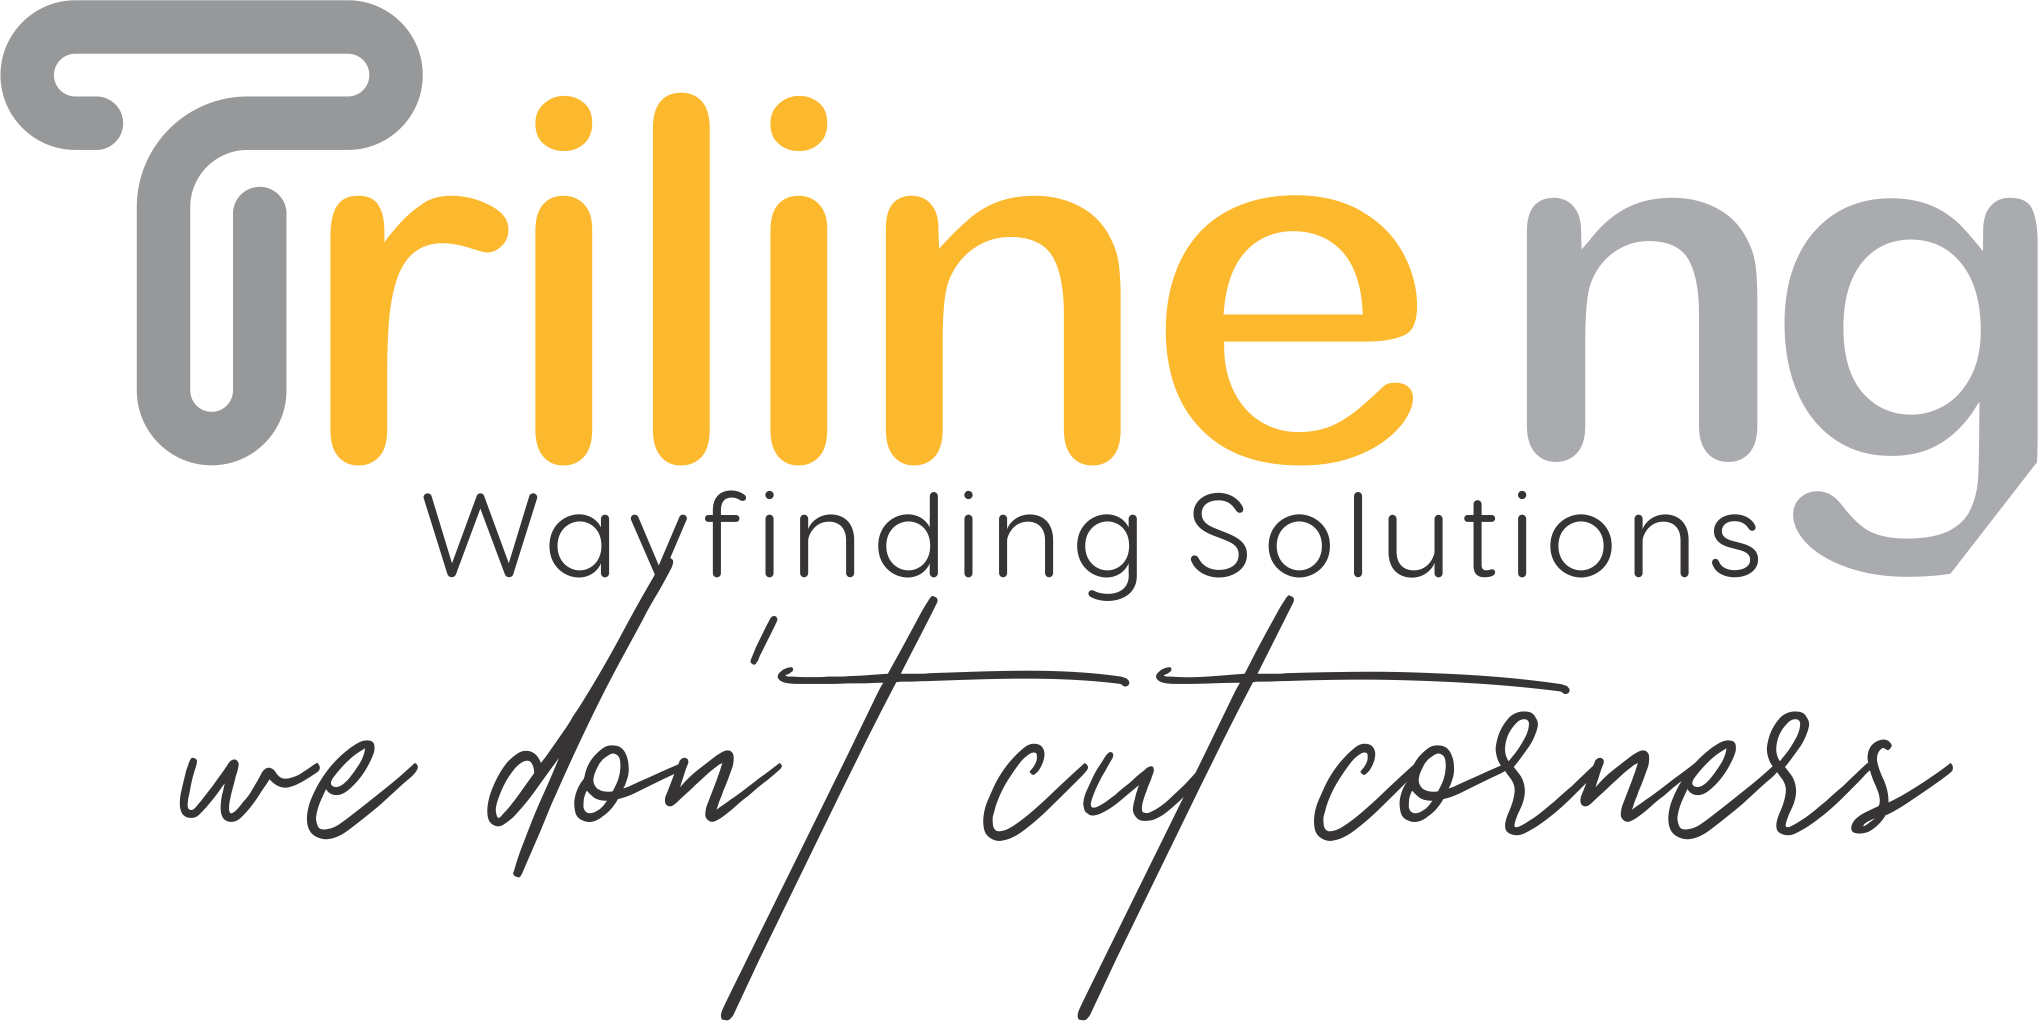 Triline Nigeria logo